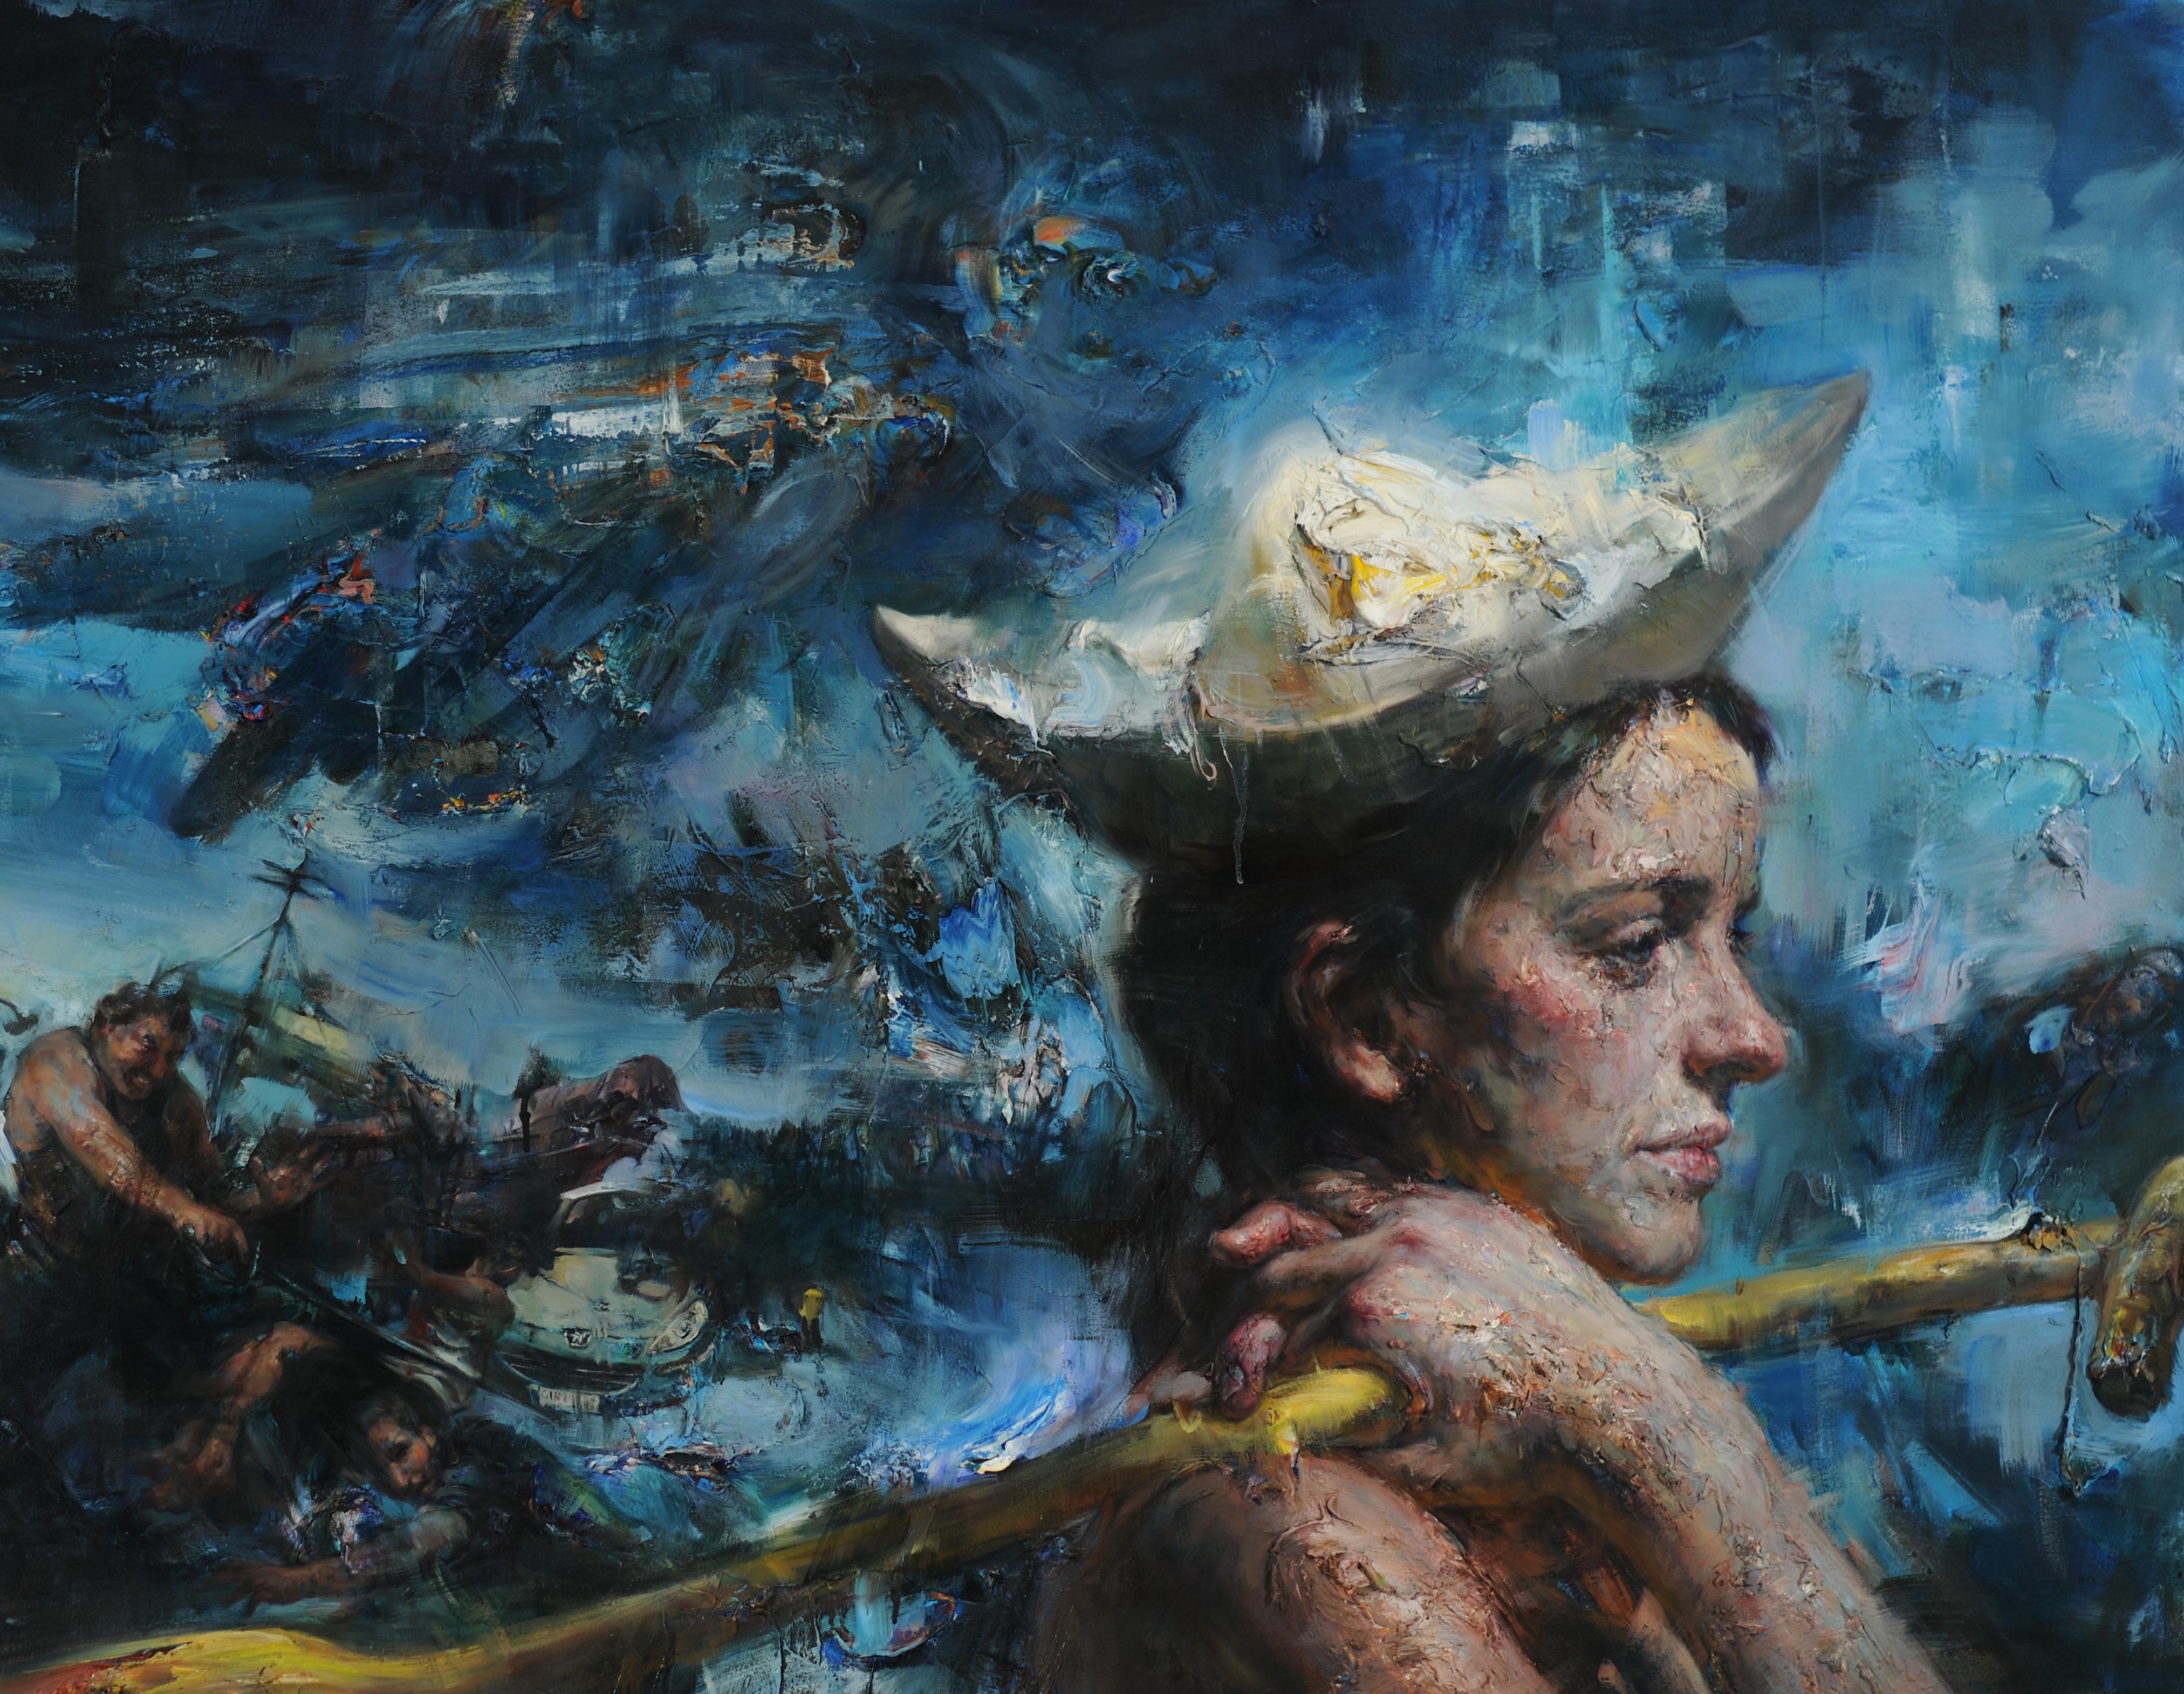 Dreaming Away - Sehr strukturiertes, traumhaftes Gemälde mit surrealem nautischen Thema (Zeitgenössisch), Painting, von Victor Wang